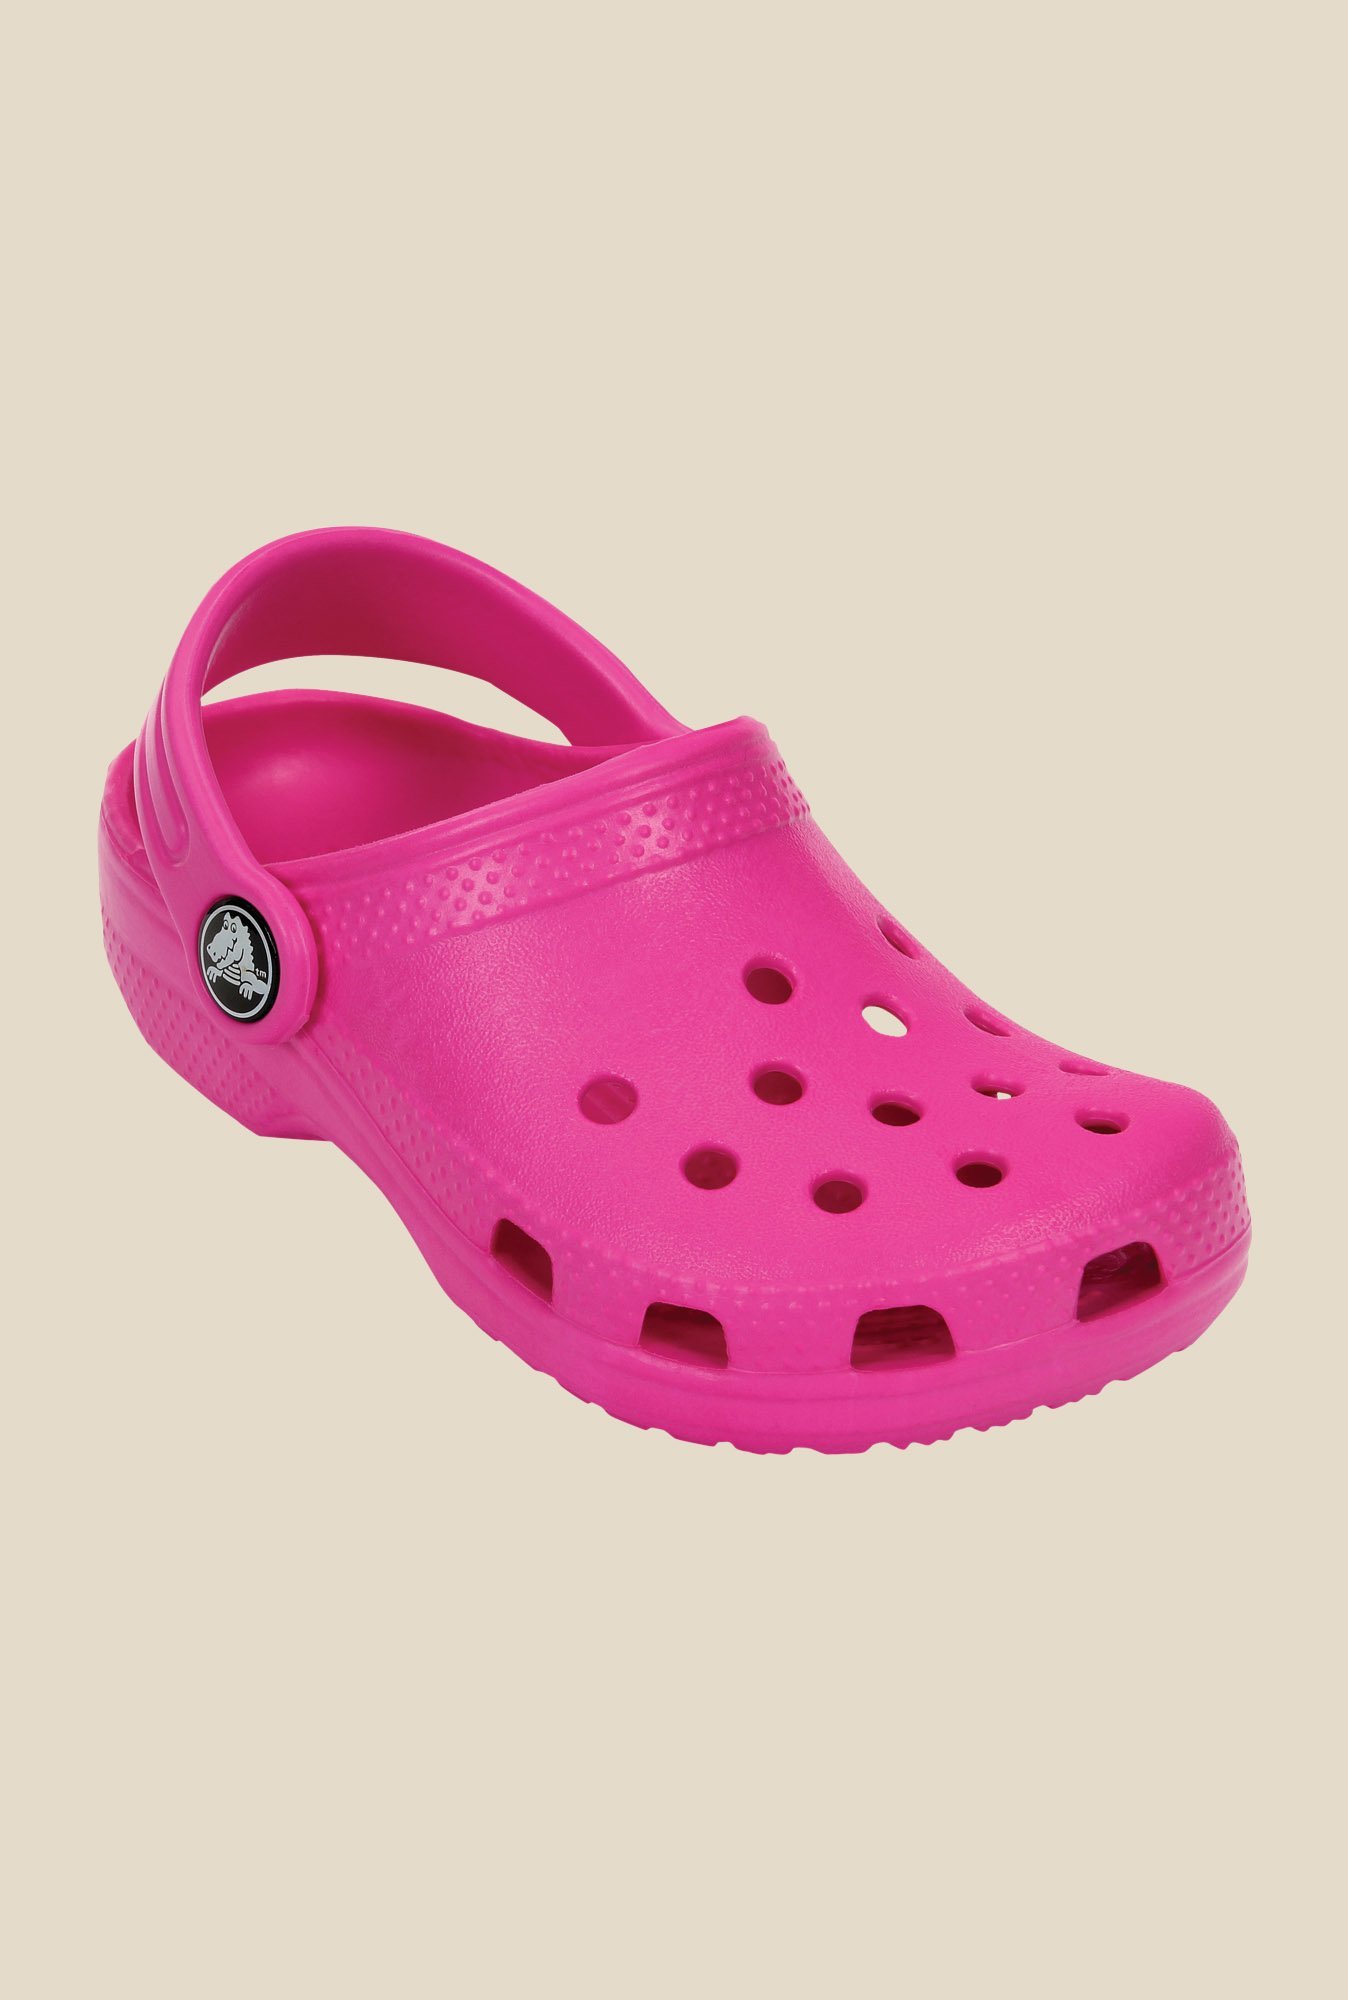 crocs neon pink